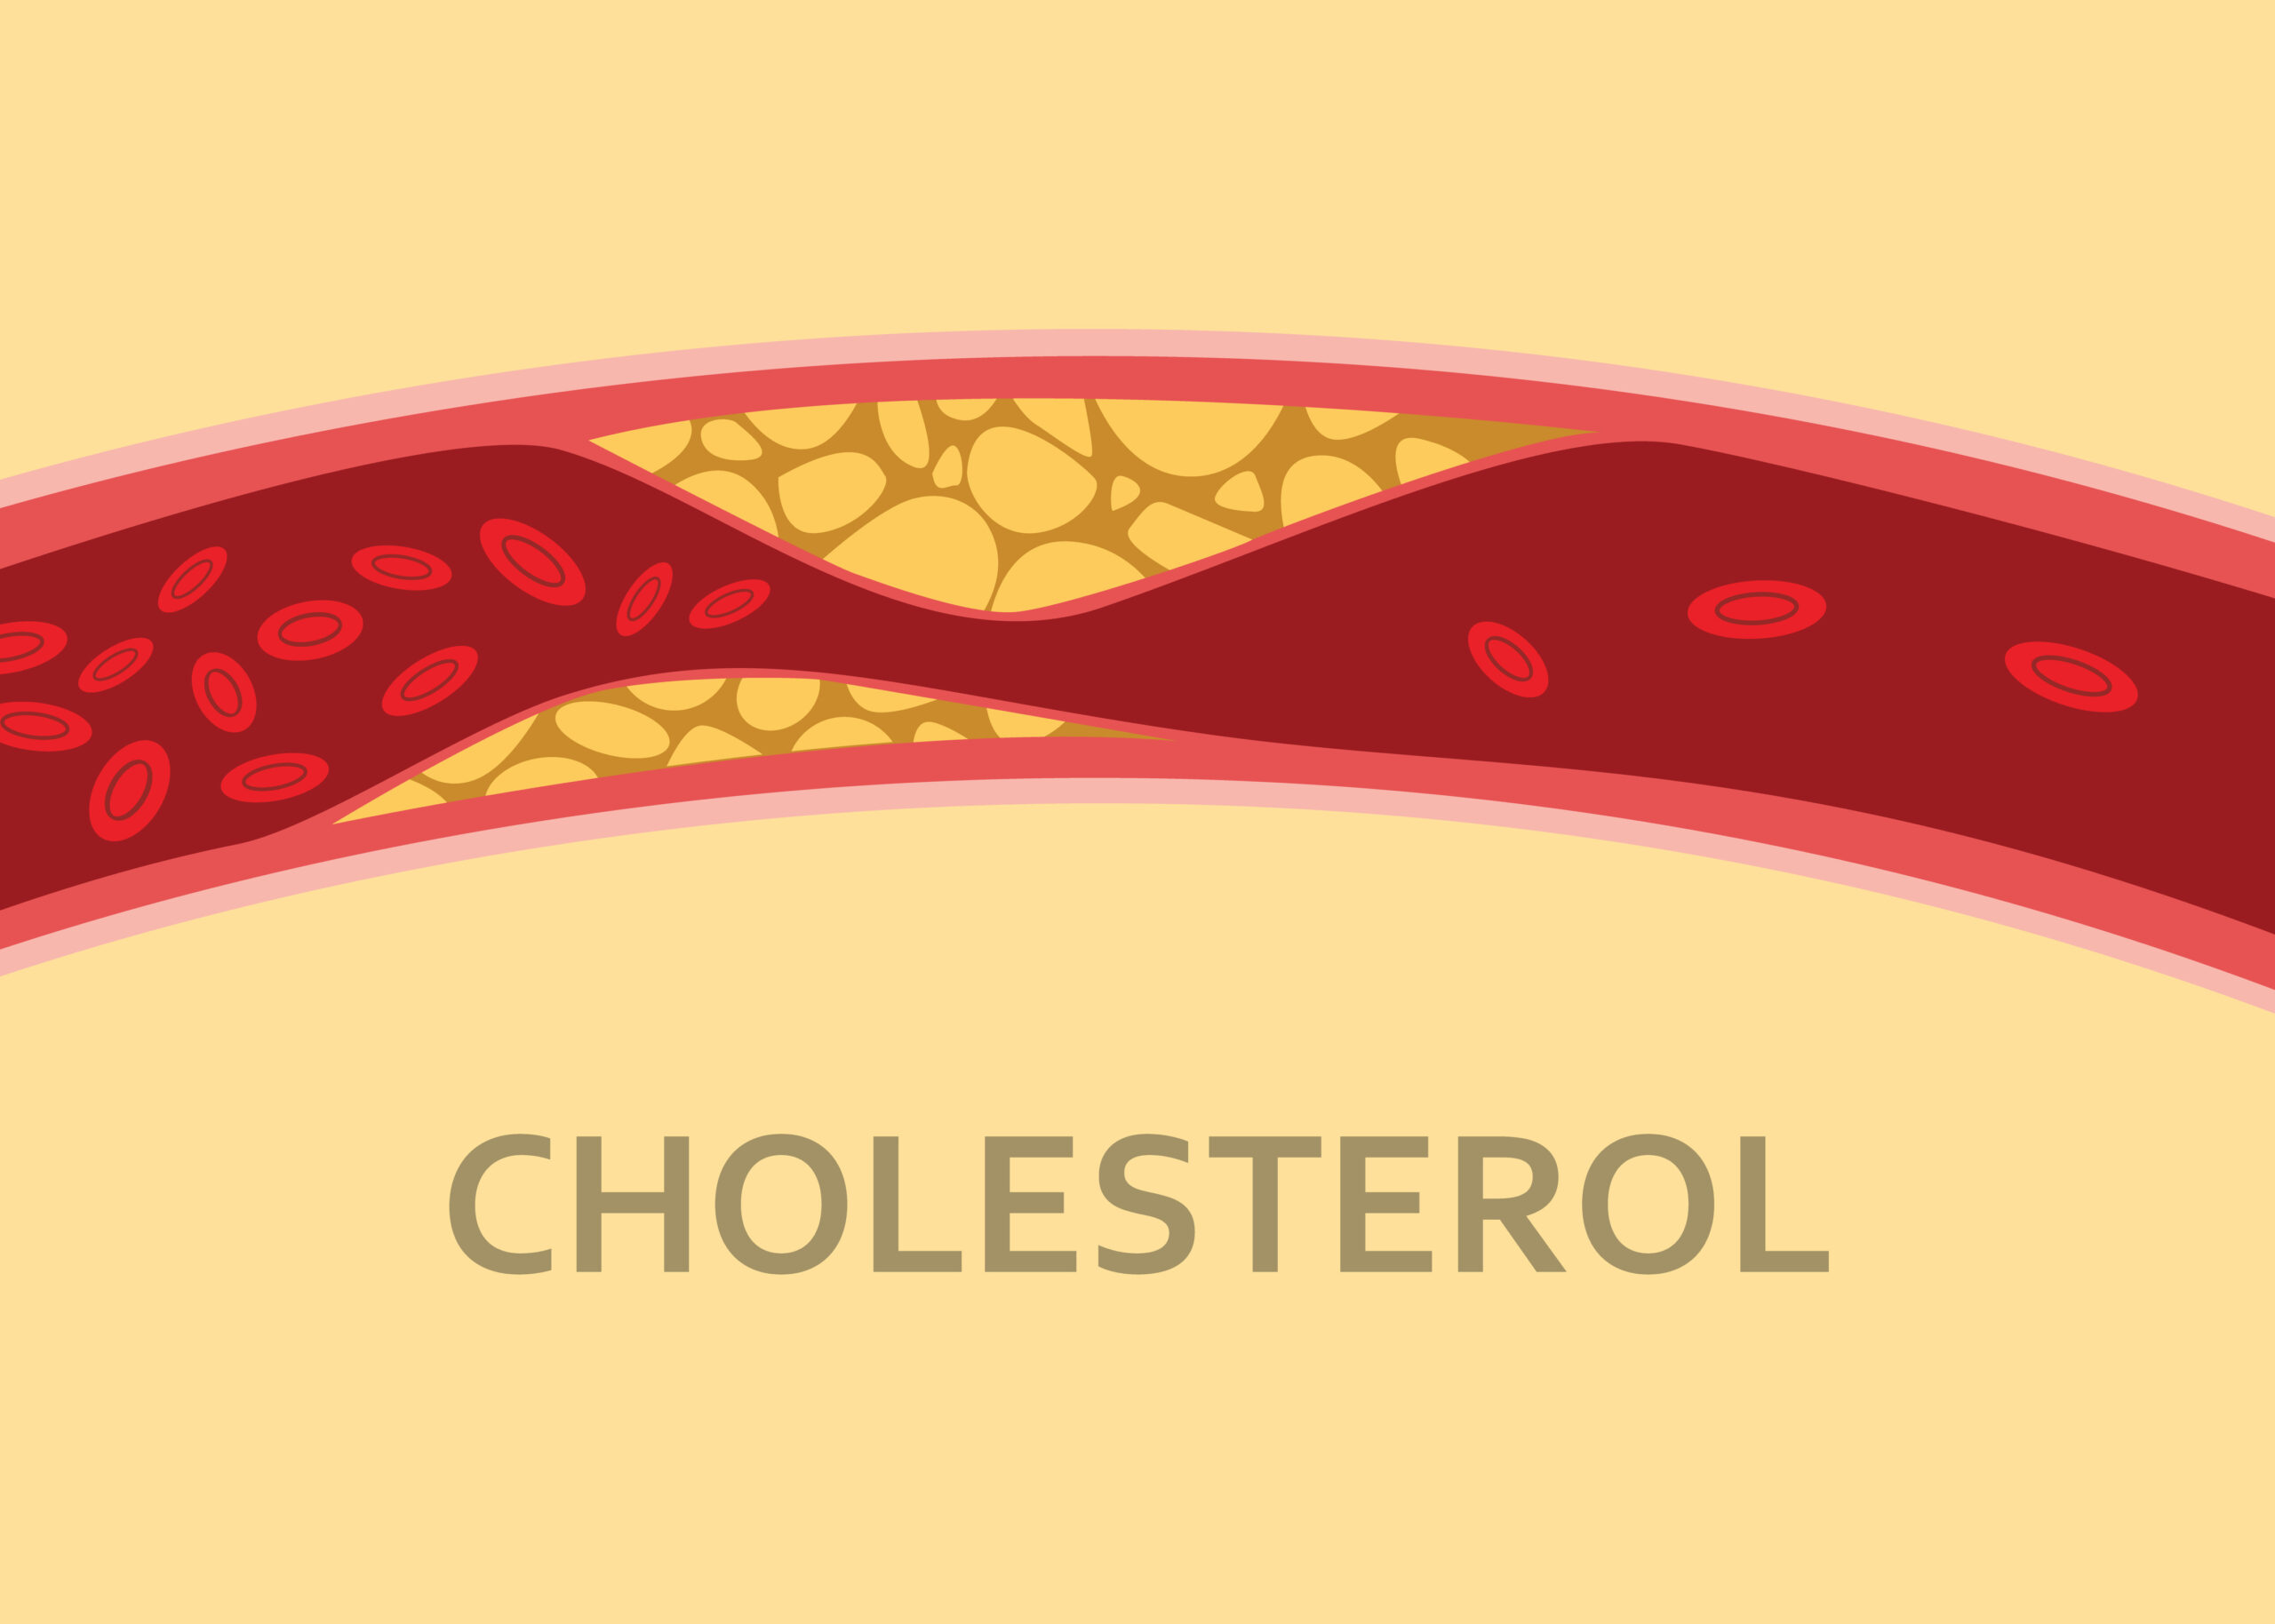 Embolies de cholestérol